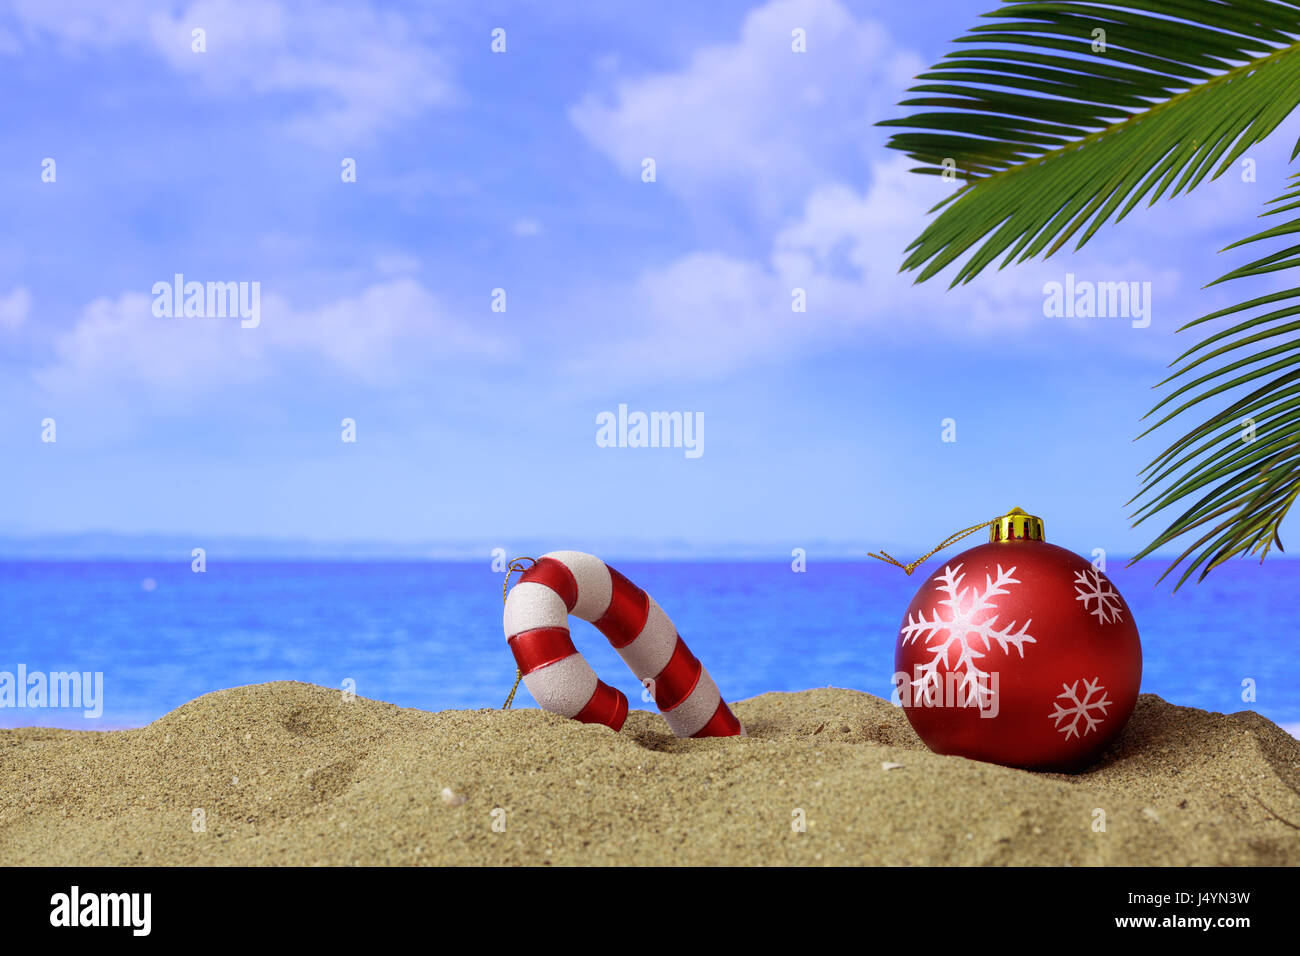 Weihnachtskugel und Ornament an einem Sandstrand - Textfreiraum Stockfoto